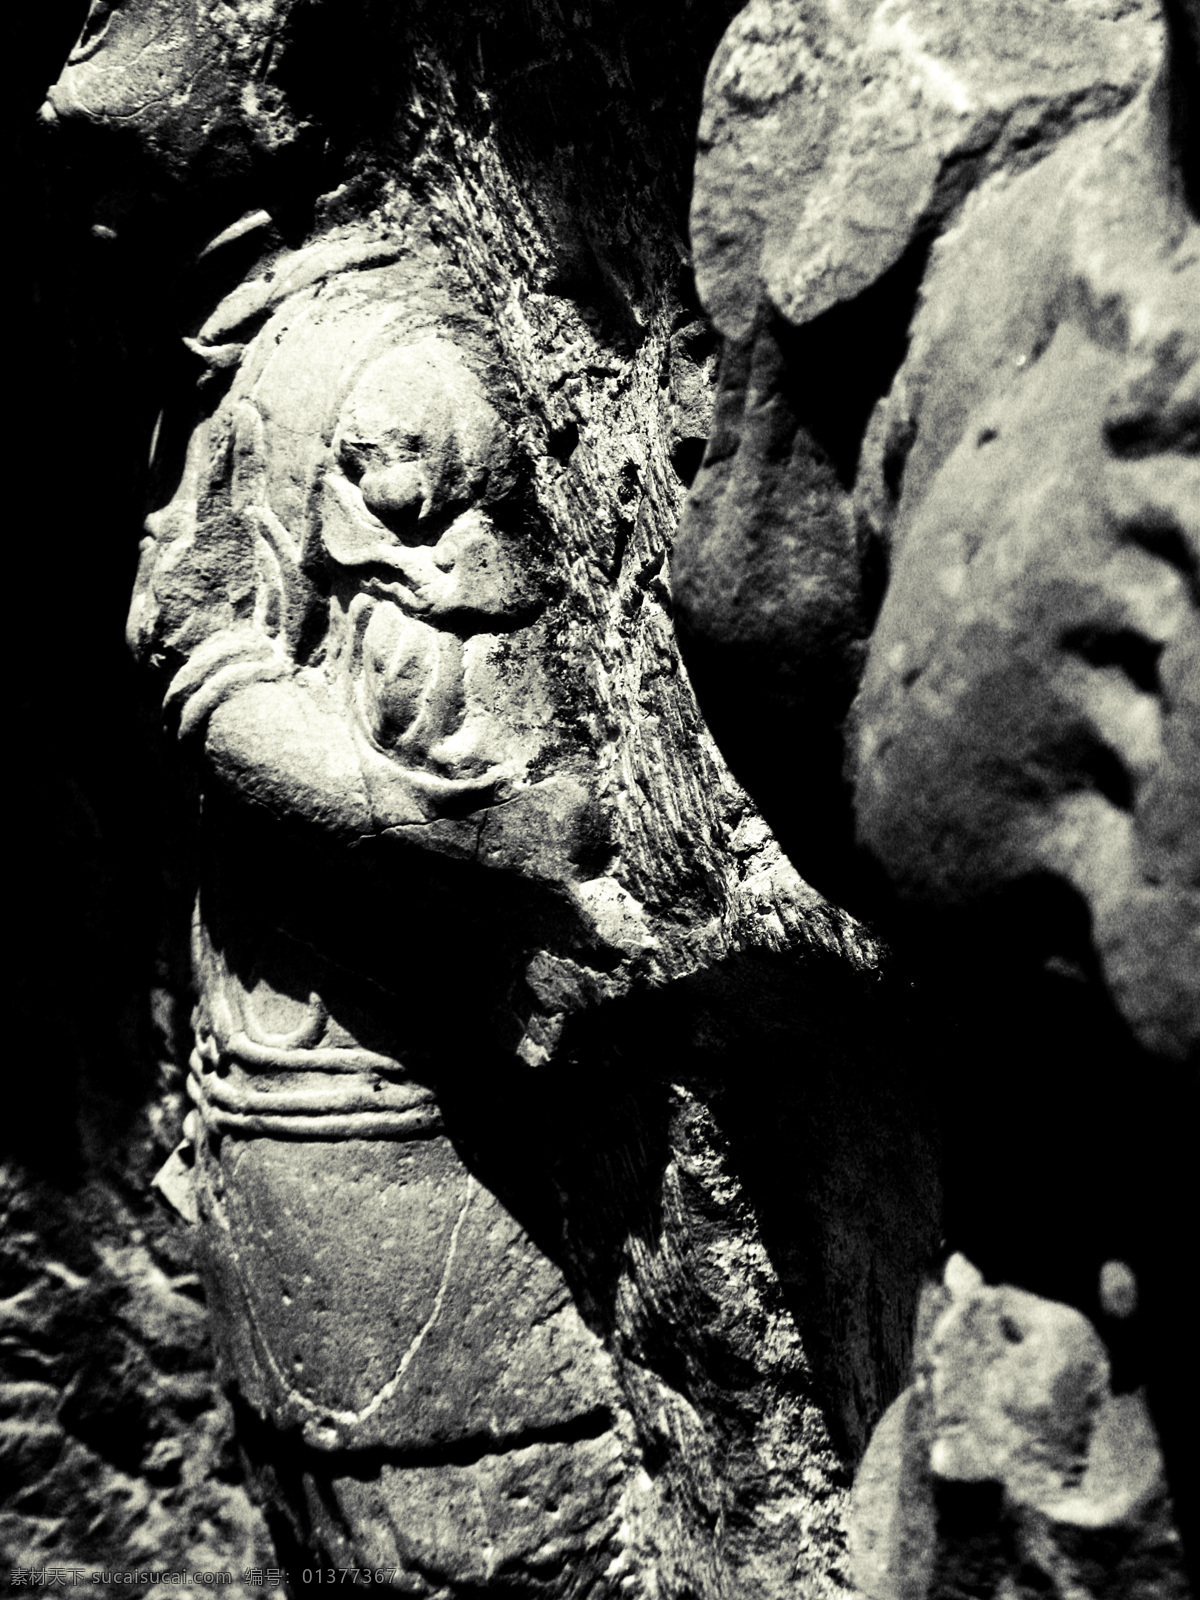 洛阳龙门石窟 世界文化遗产 龙门石窟 石刻艺术 中国 三 大石 窟 之一 文化艺术